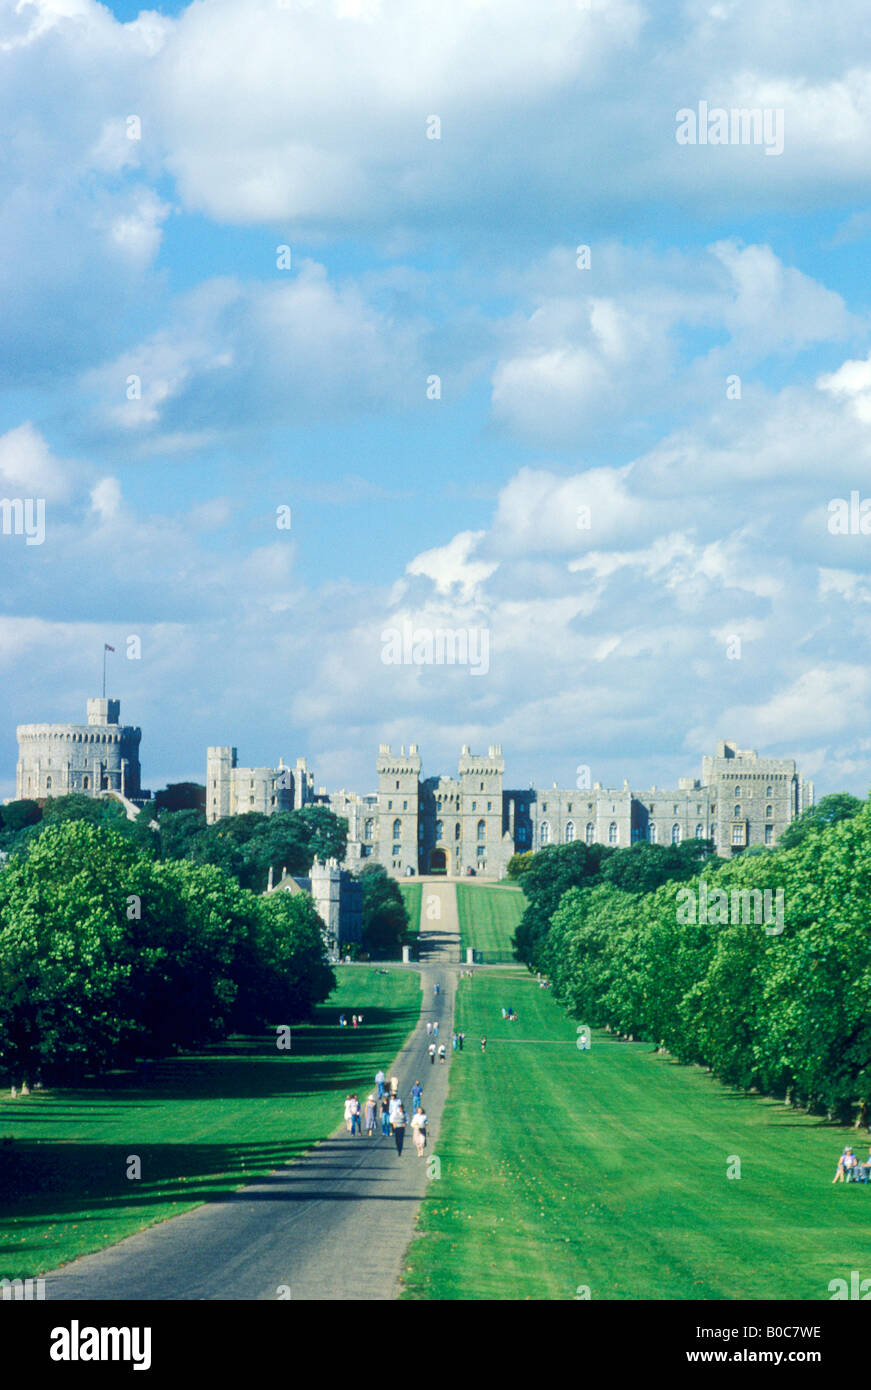 Il Castello di Windsor e la lunga passeggiata Royal Residence Regina dell'Inghilterra Palace Berkshire REGNO UNITO Viaggi turismo attrazione turistica Foto Stock